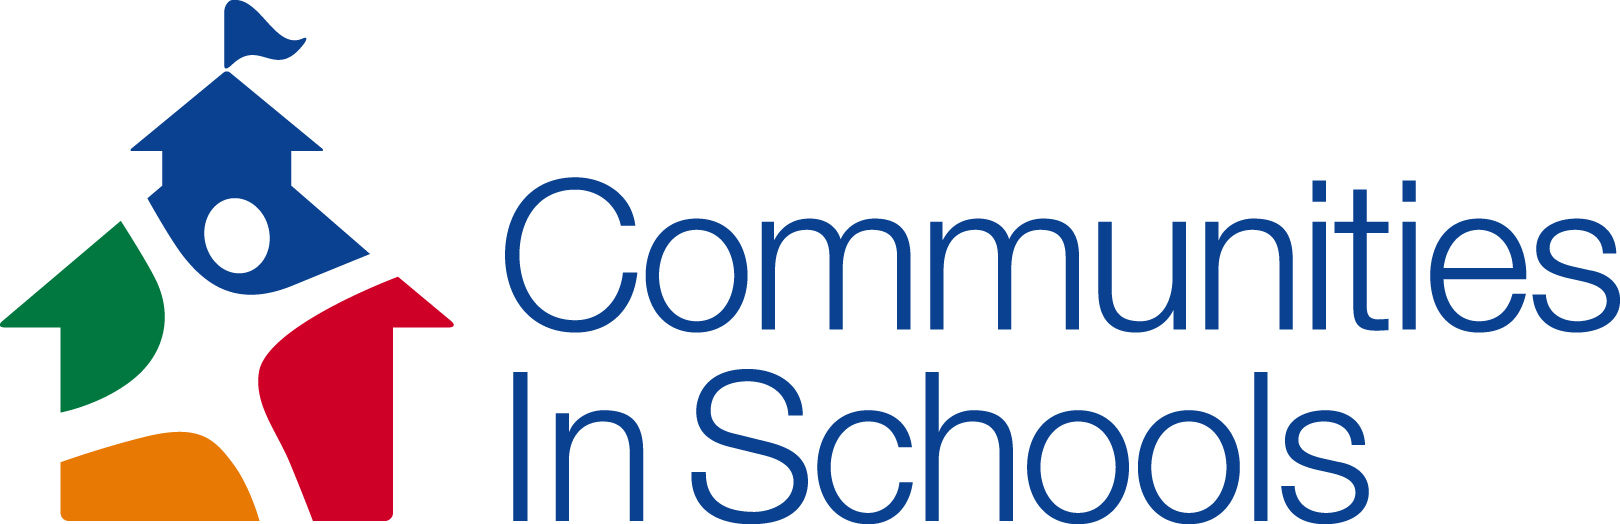 Golden Crescent Communities in Schools logo